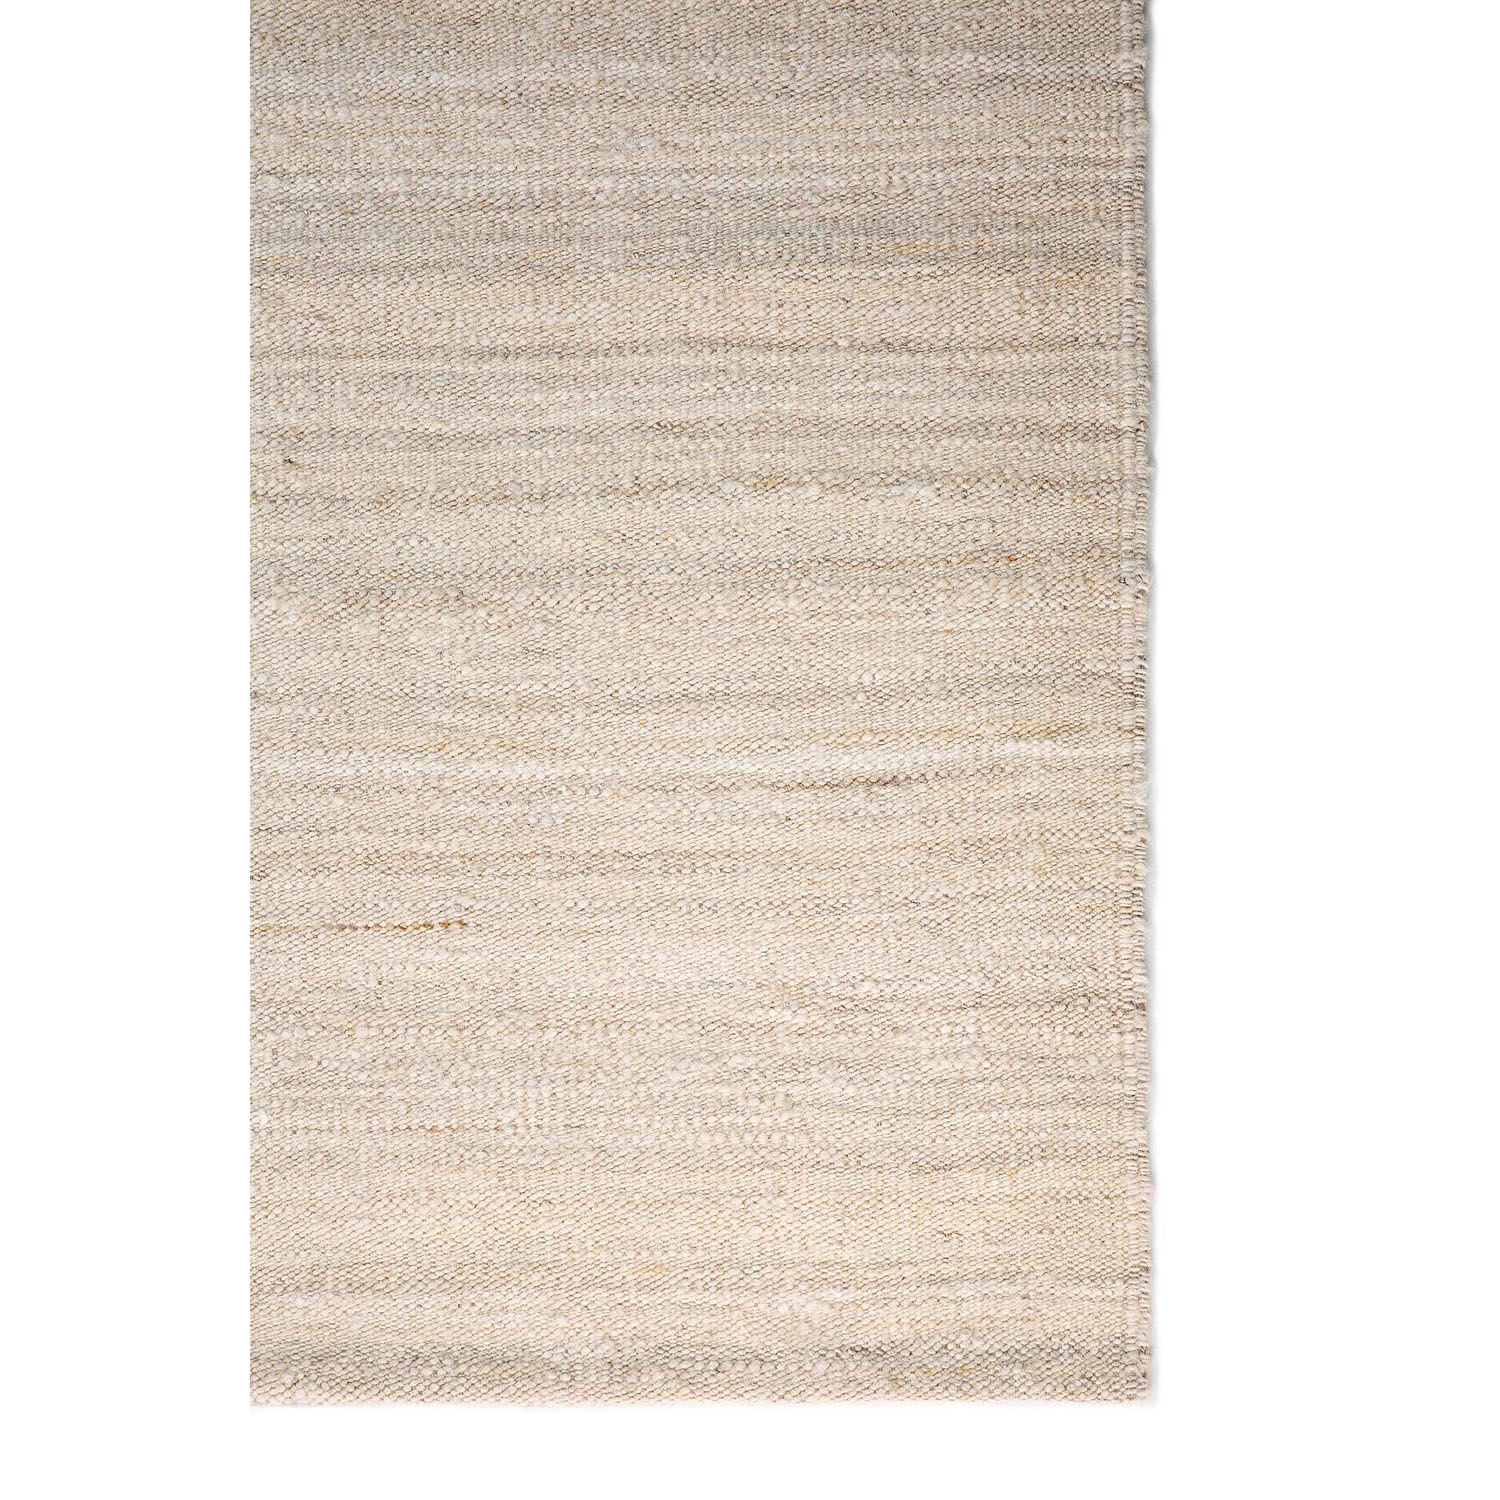 Nomad Kilim-Teppich Sand 100 % handgesponnene Wolle 21701